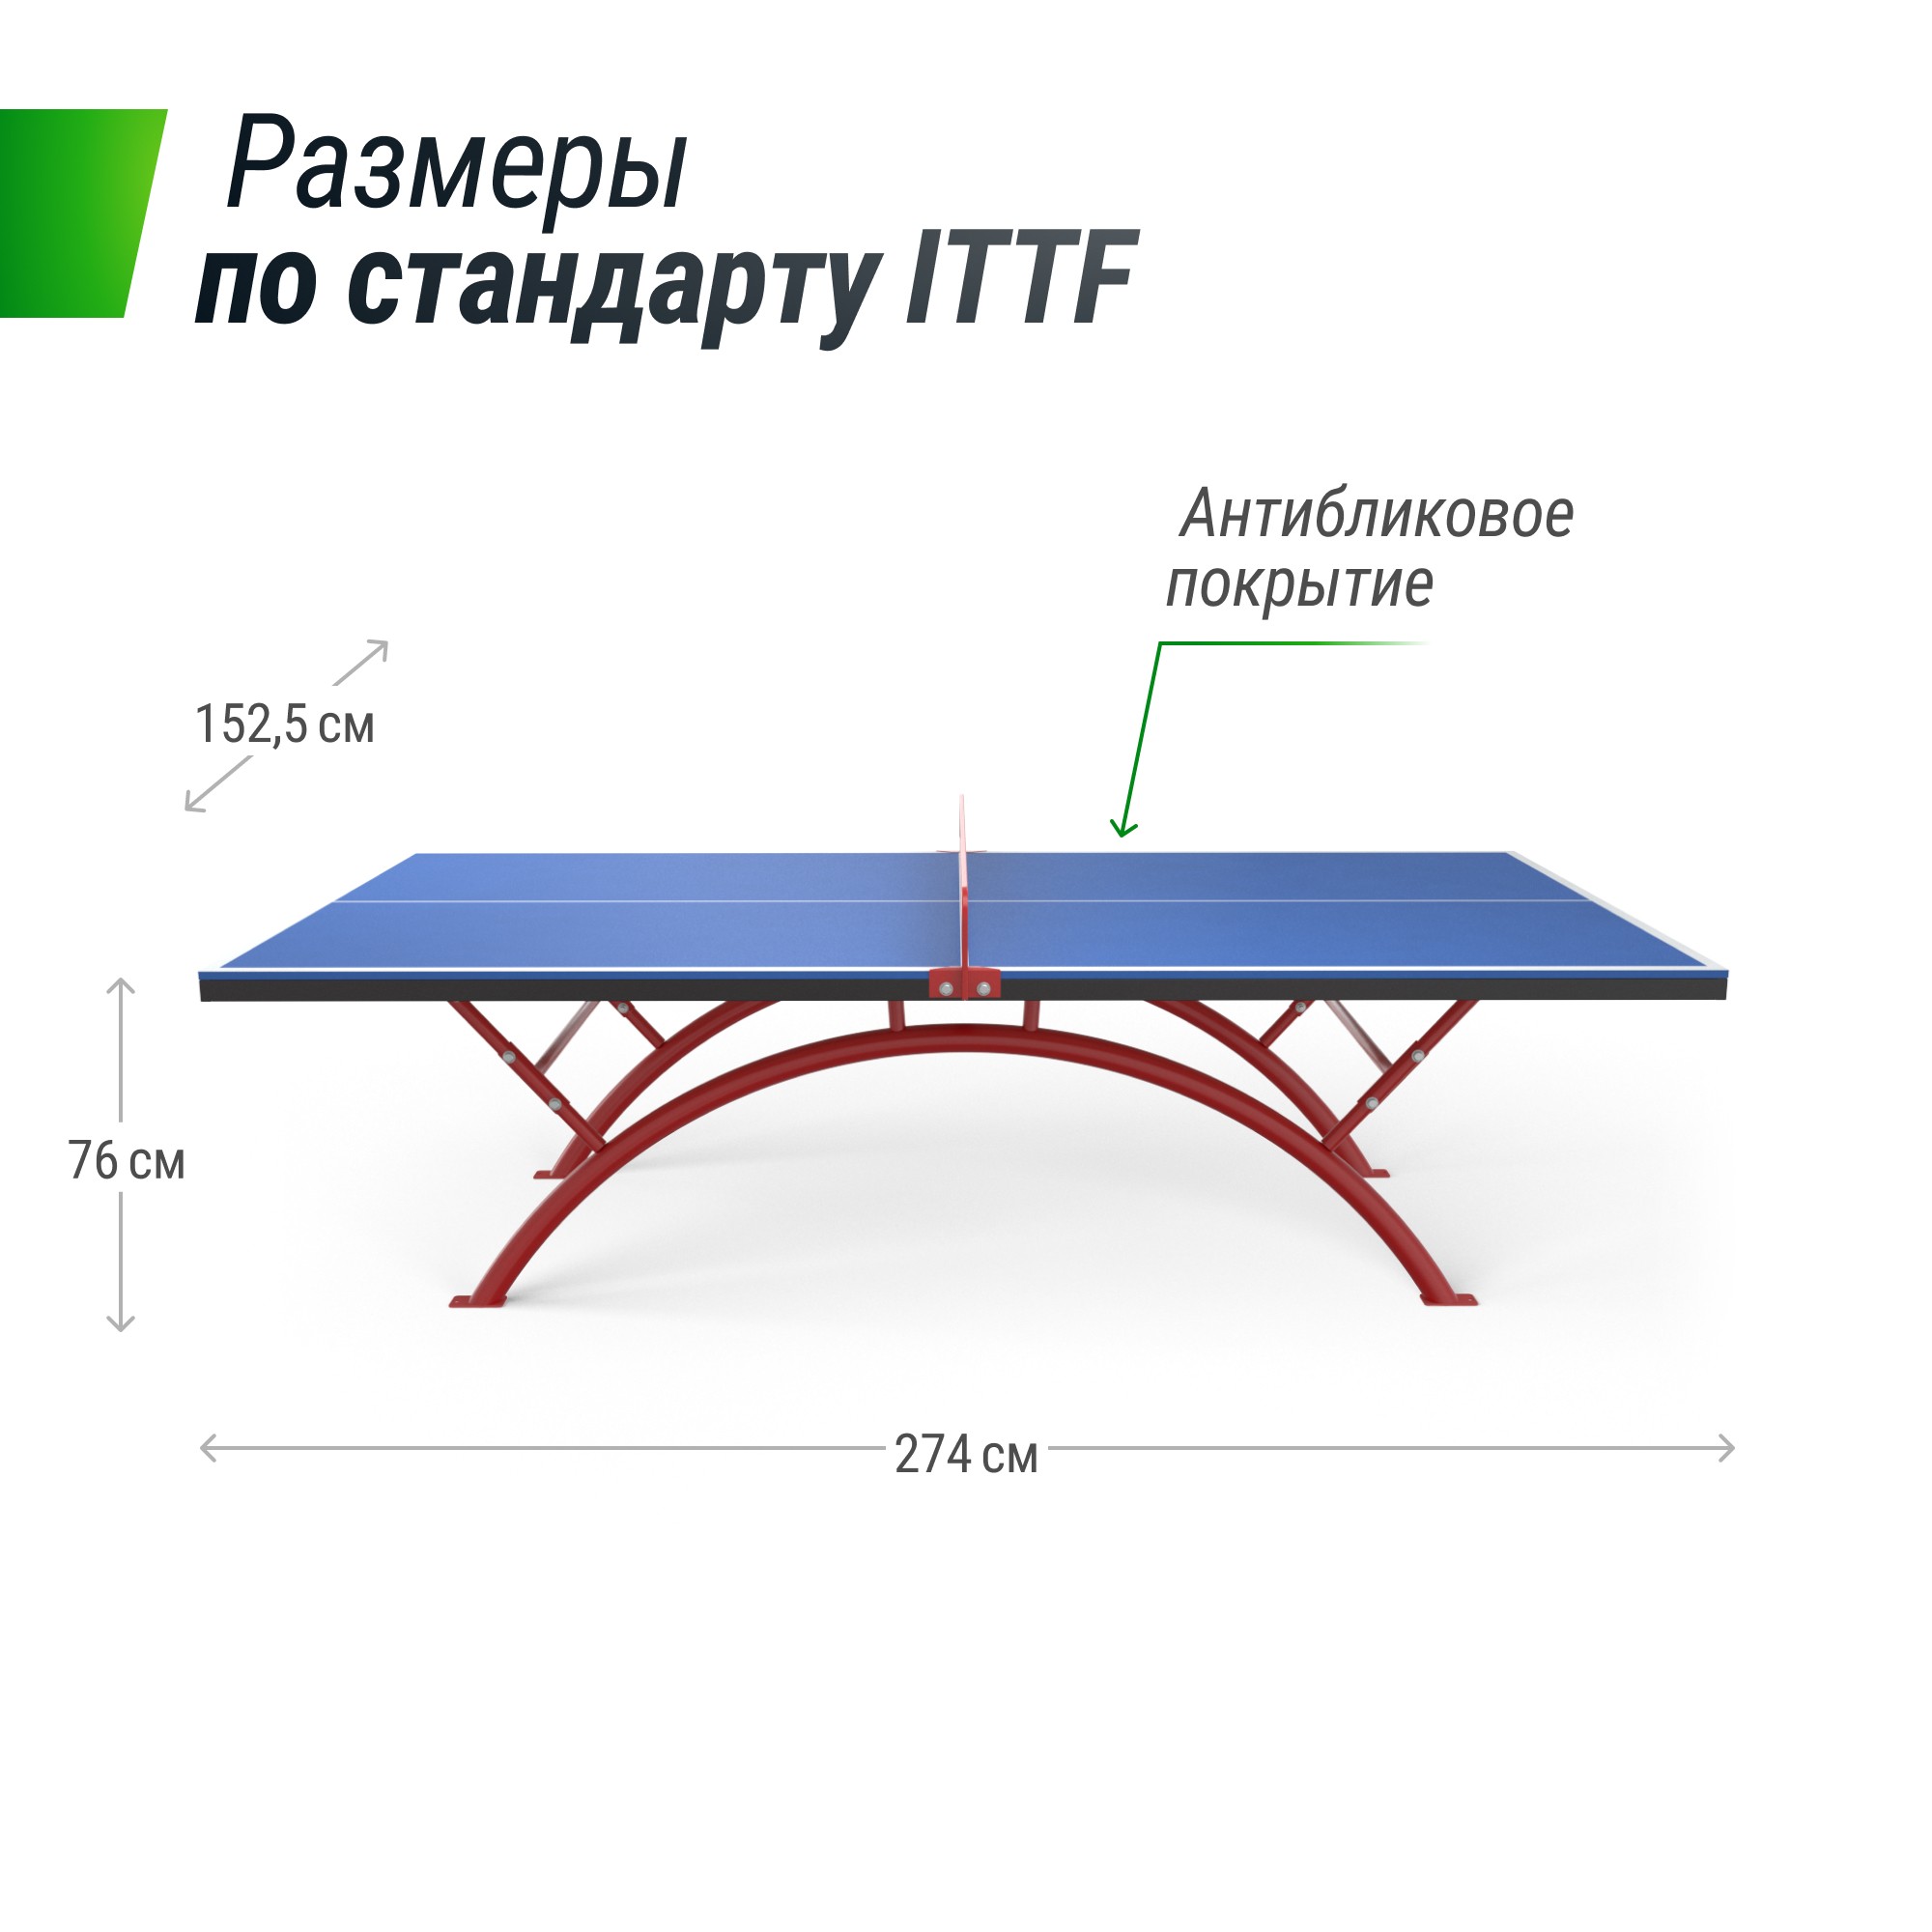 Антивандальный теннисный стол Unix Line 14 mm SMC TTS14ANVBLR Blue\Red 2000_2000